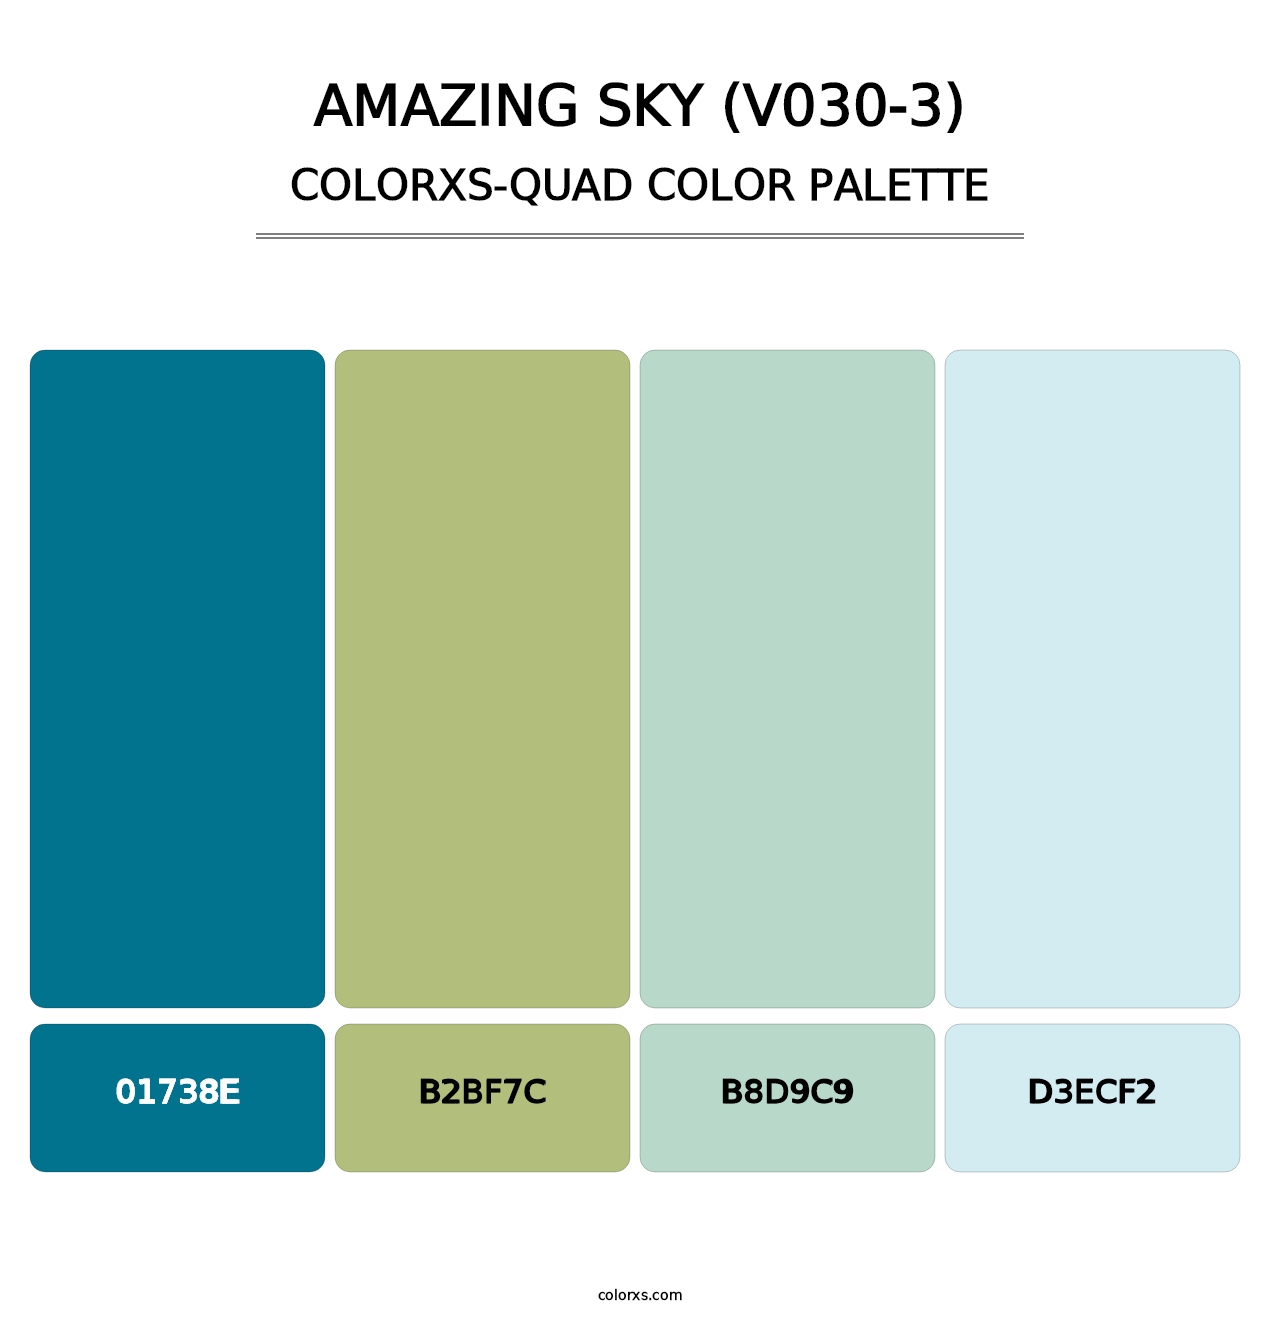 Amazing Sky (V030-3) - Colorxs Quad Palette